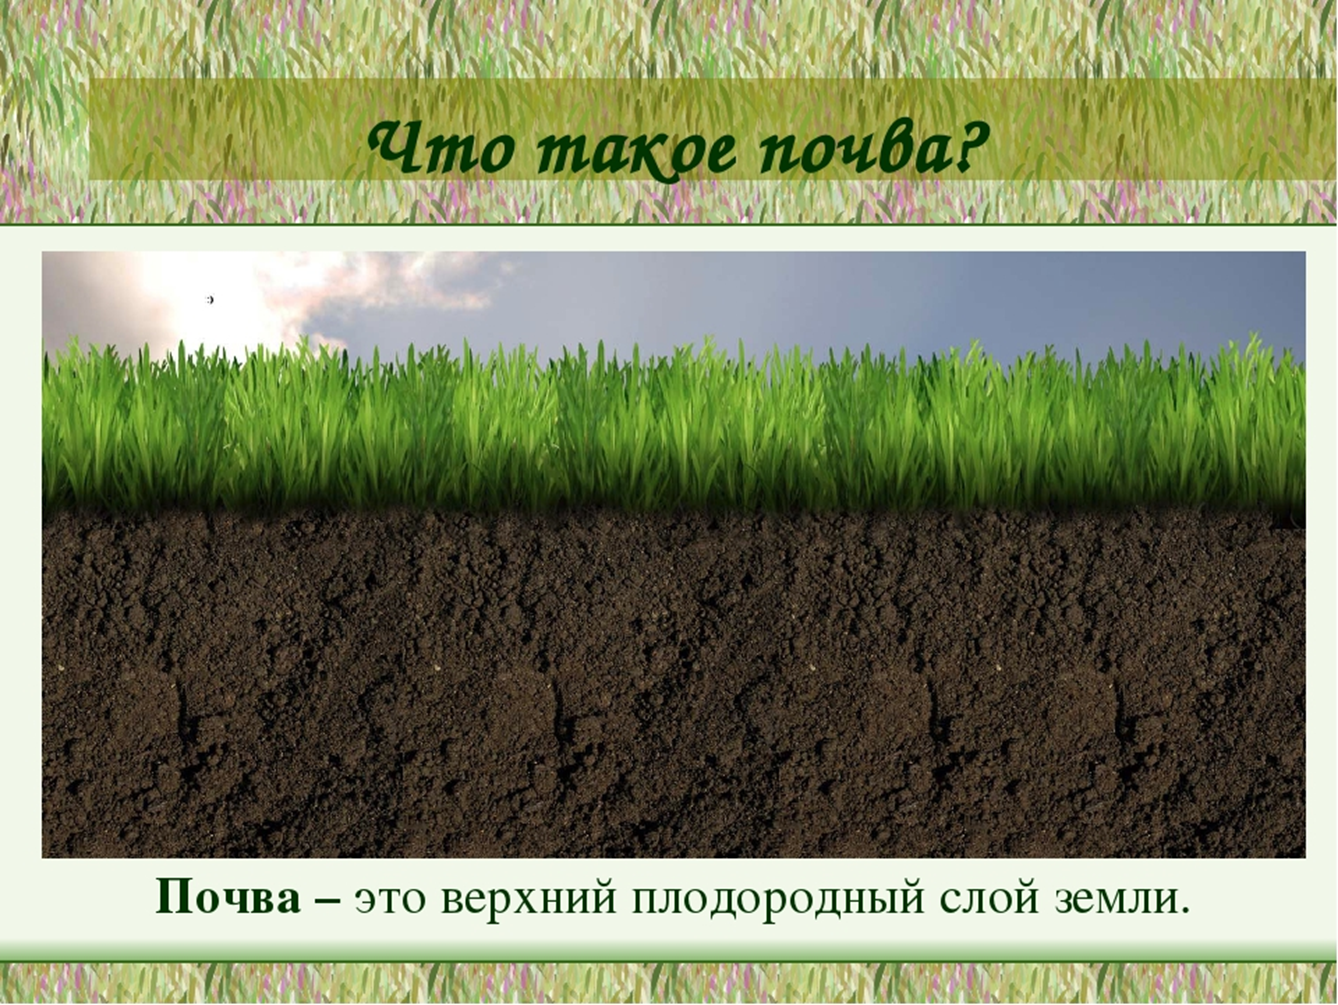 Плодородие это свойство почвы которое. Почва. Плодородный слой почвы. Почвенный слой земли. Почва плодородный слой земли.